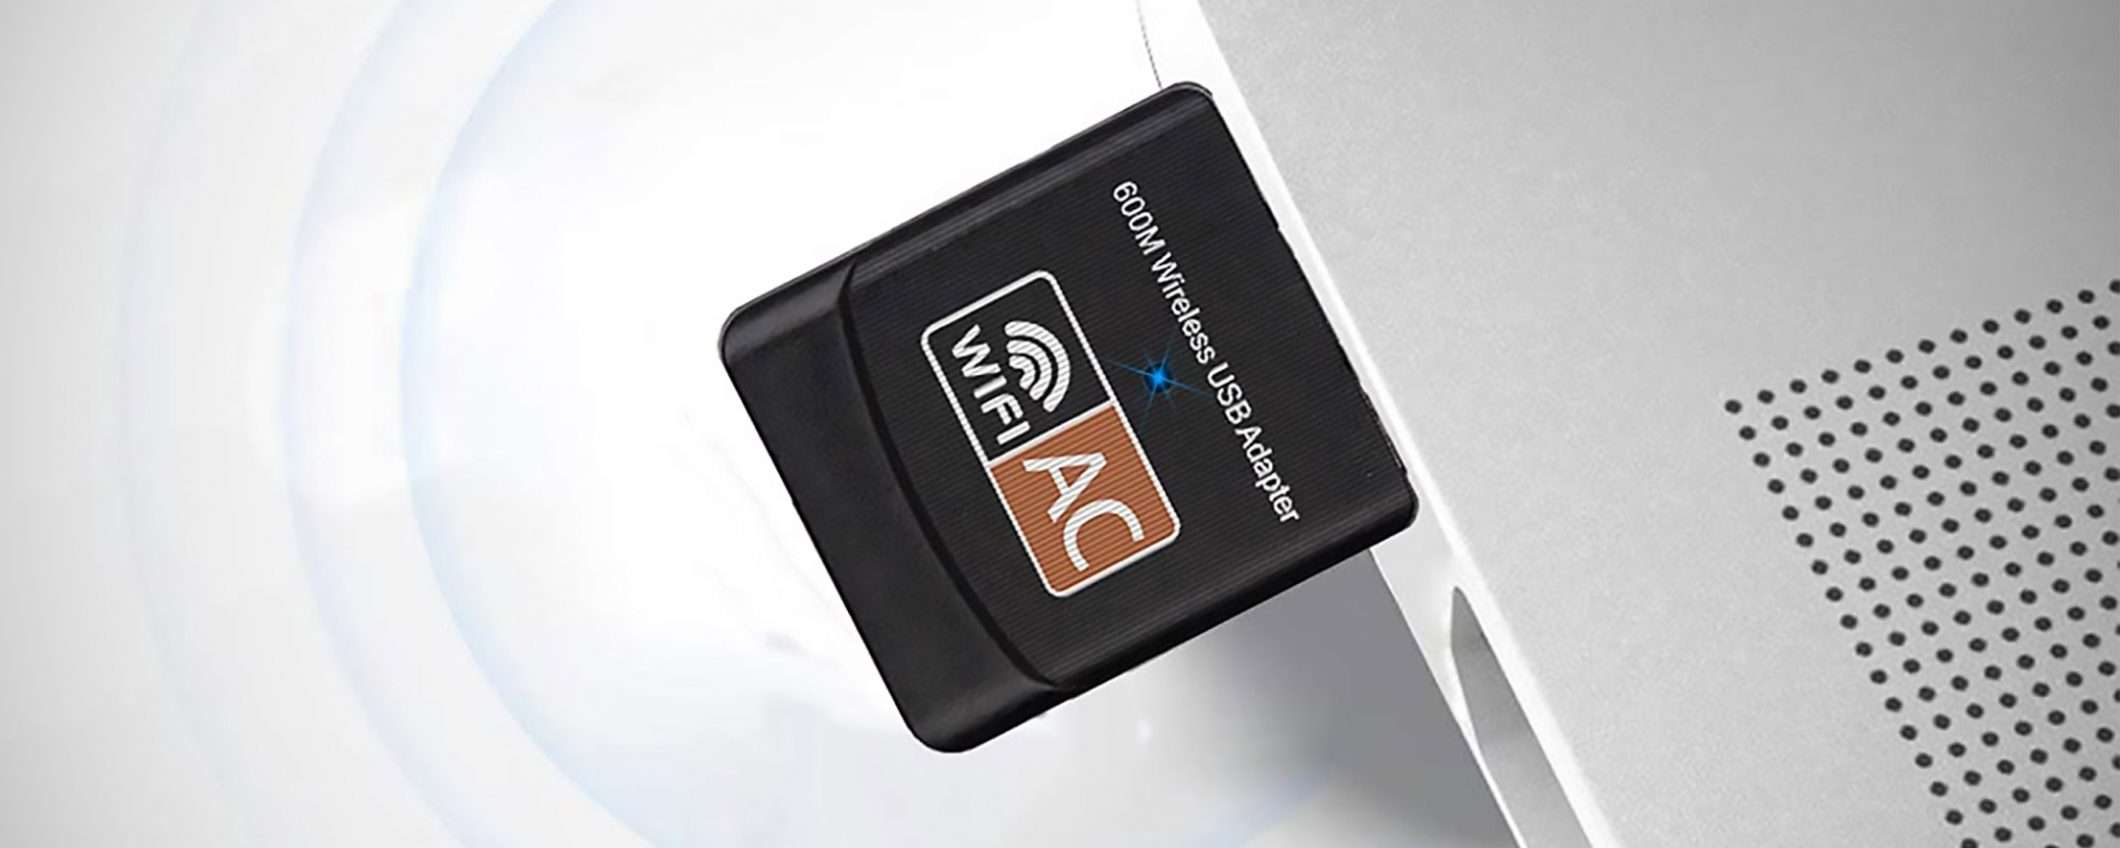 Adattatore WiFi USB in offerta lampo su Amazon